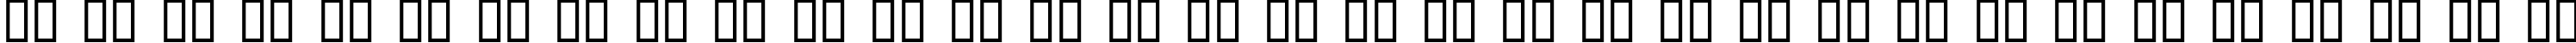 Пример написания русского алфавита шрифтом kroeger 04_56